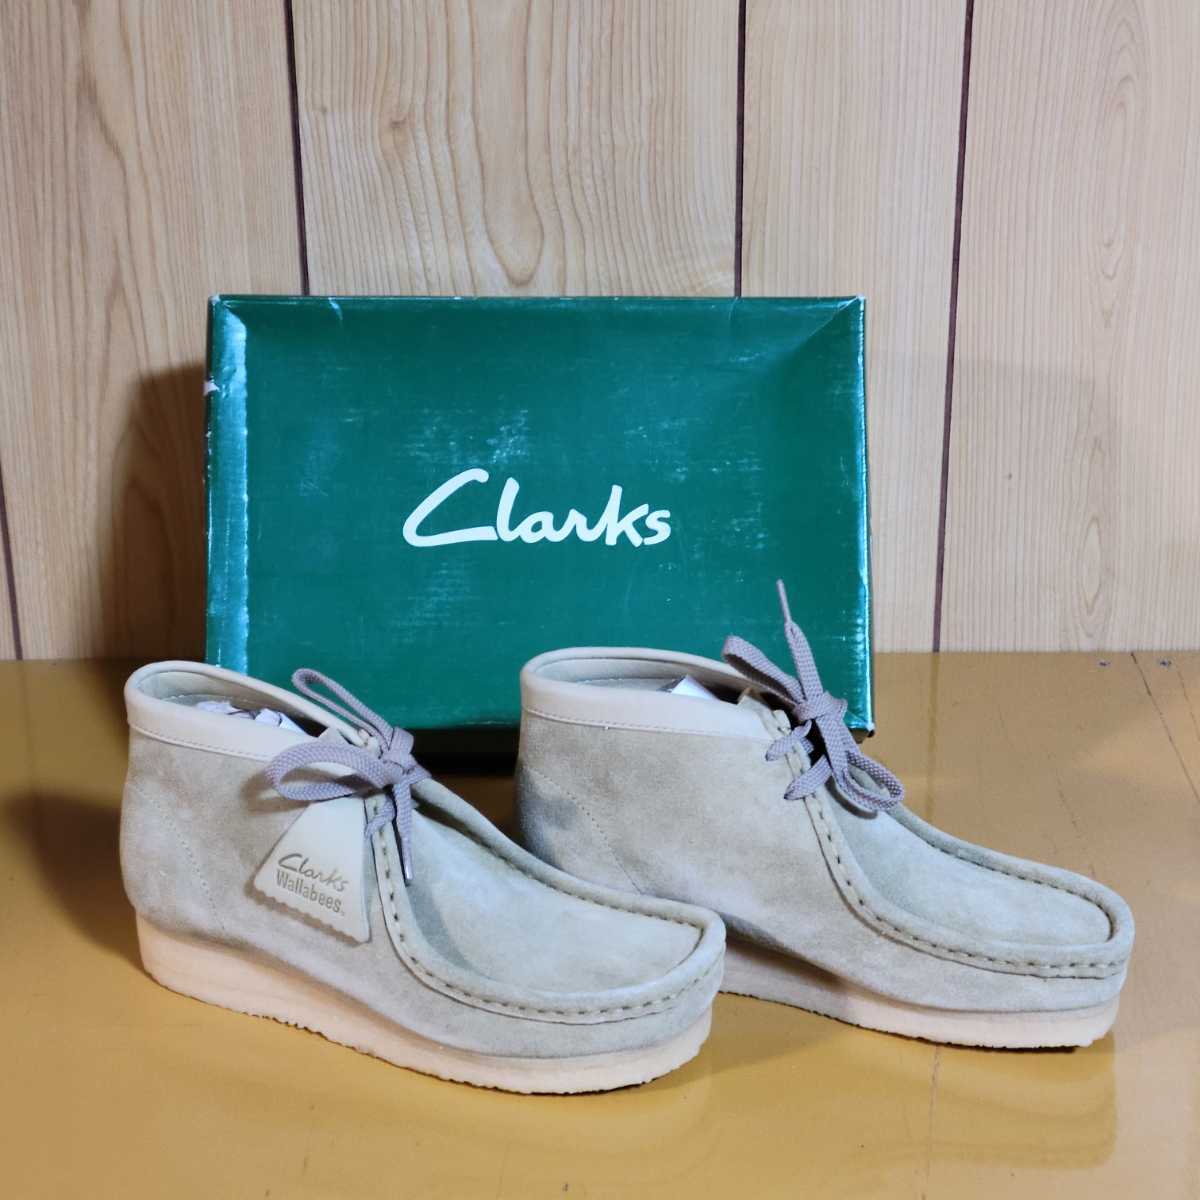 Clarks クラークス ワラビー 23.0cm 【90%OFF!】